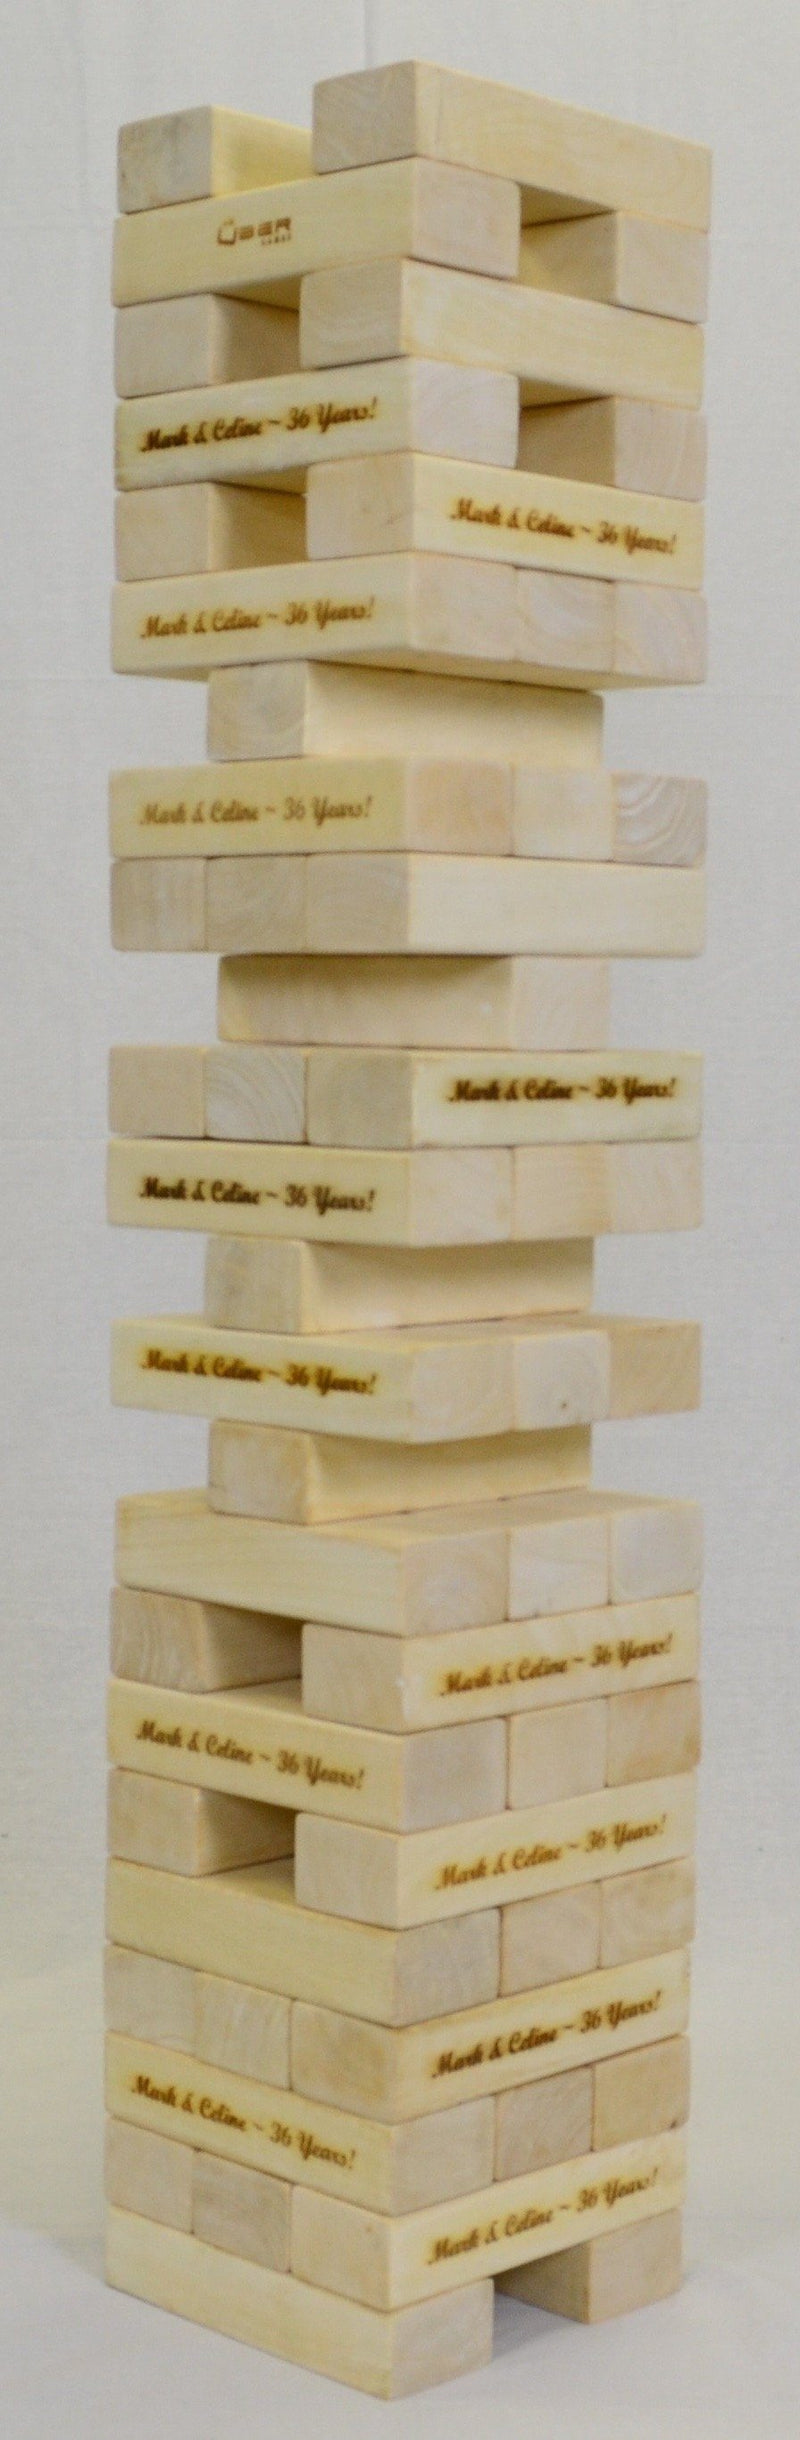 Customized Giant Tumble Tower Hardwood |  | MegaChess.com